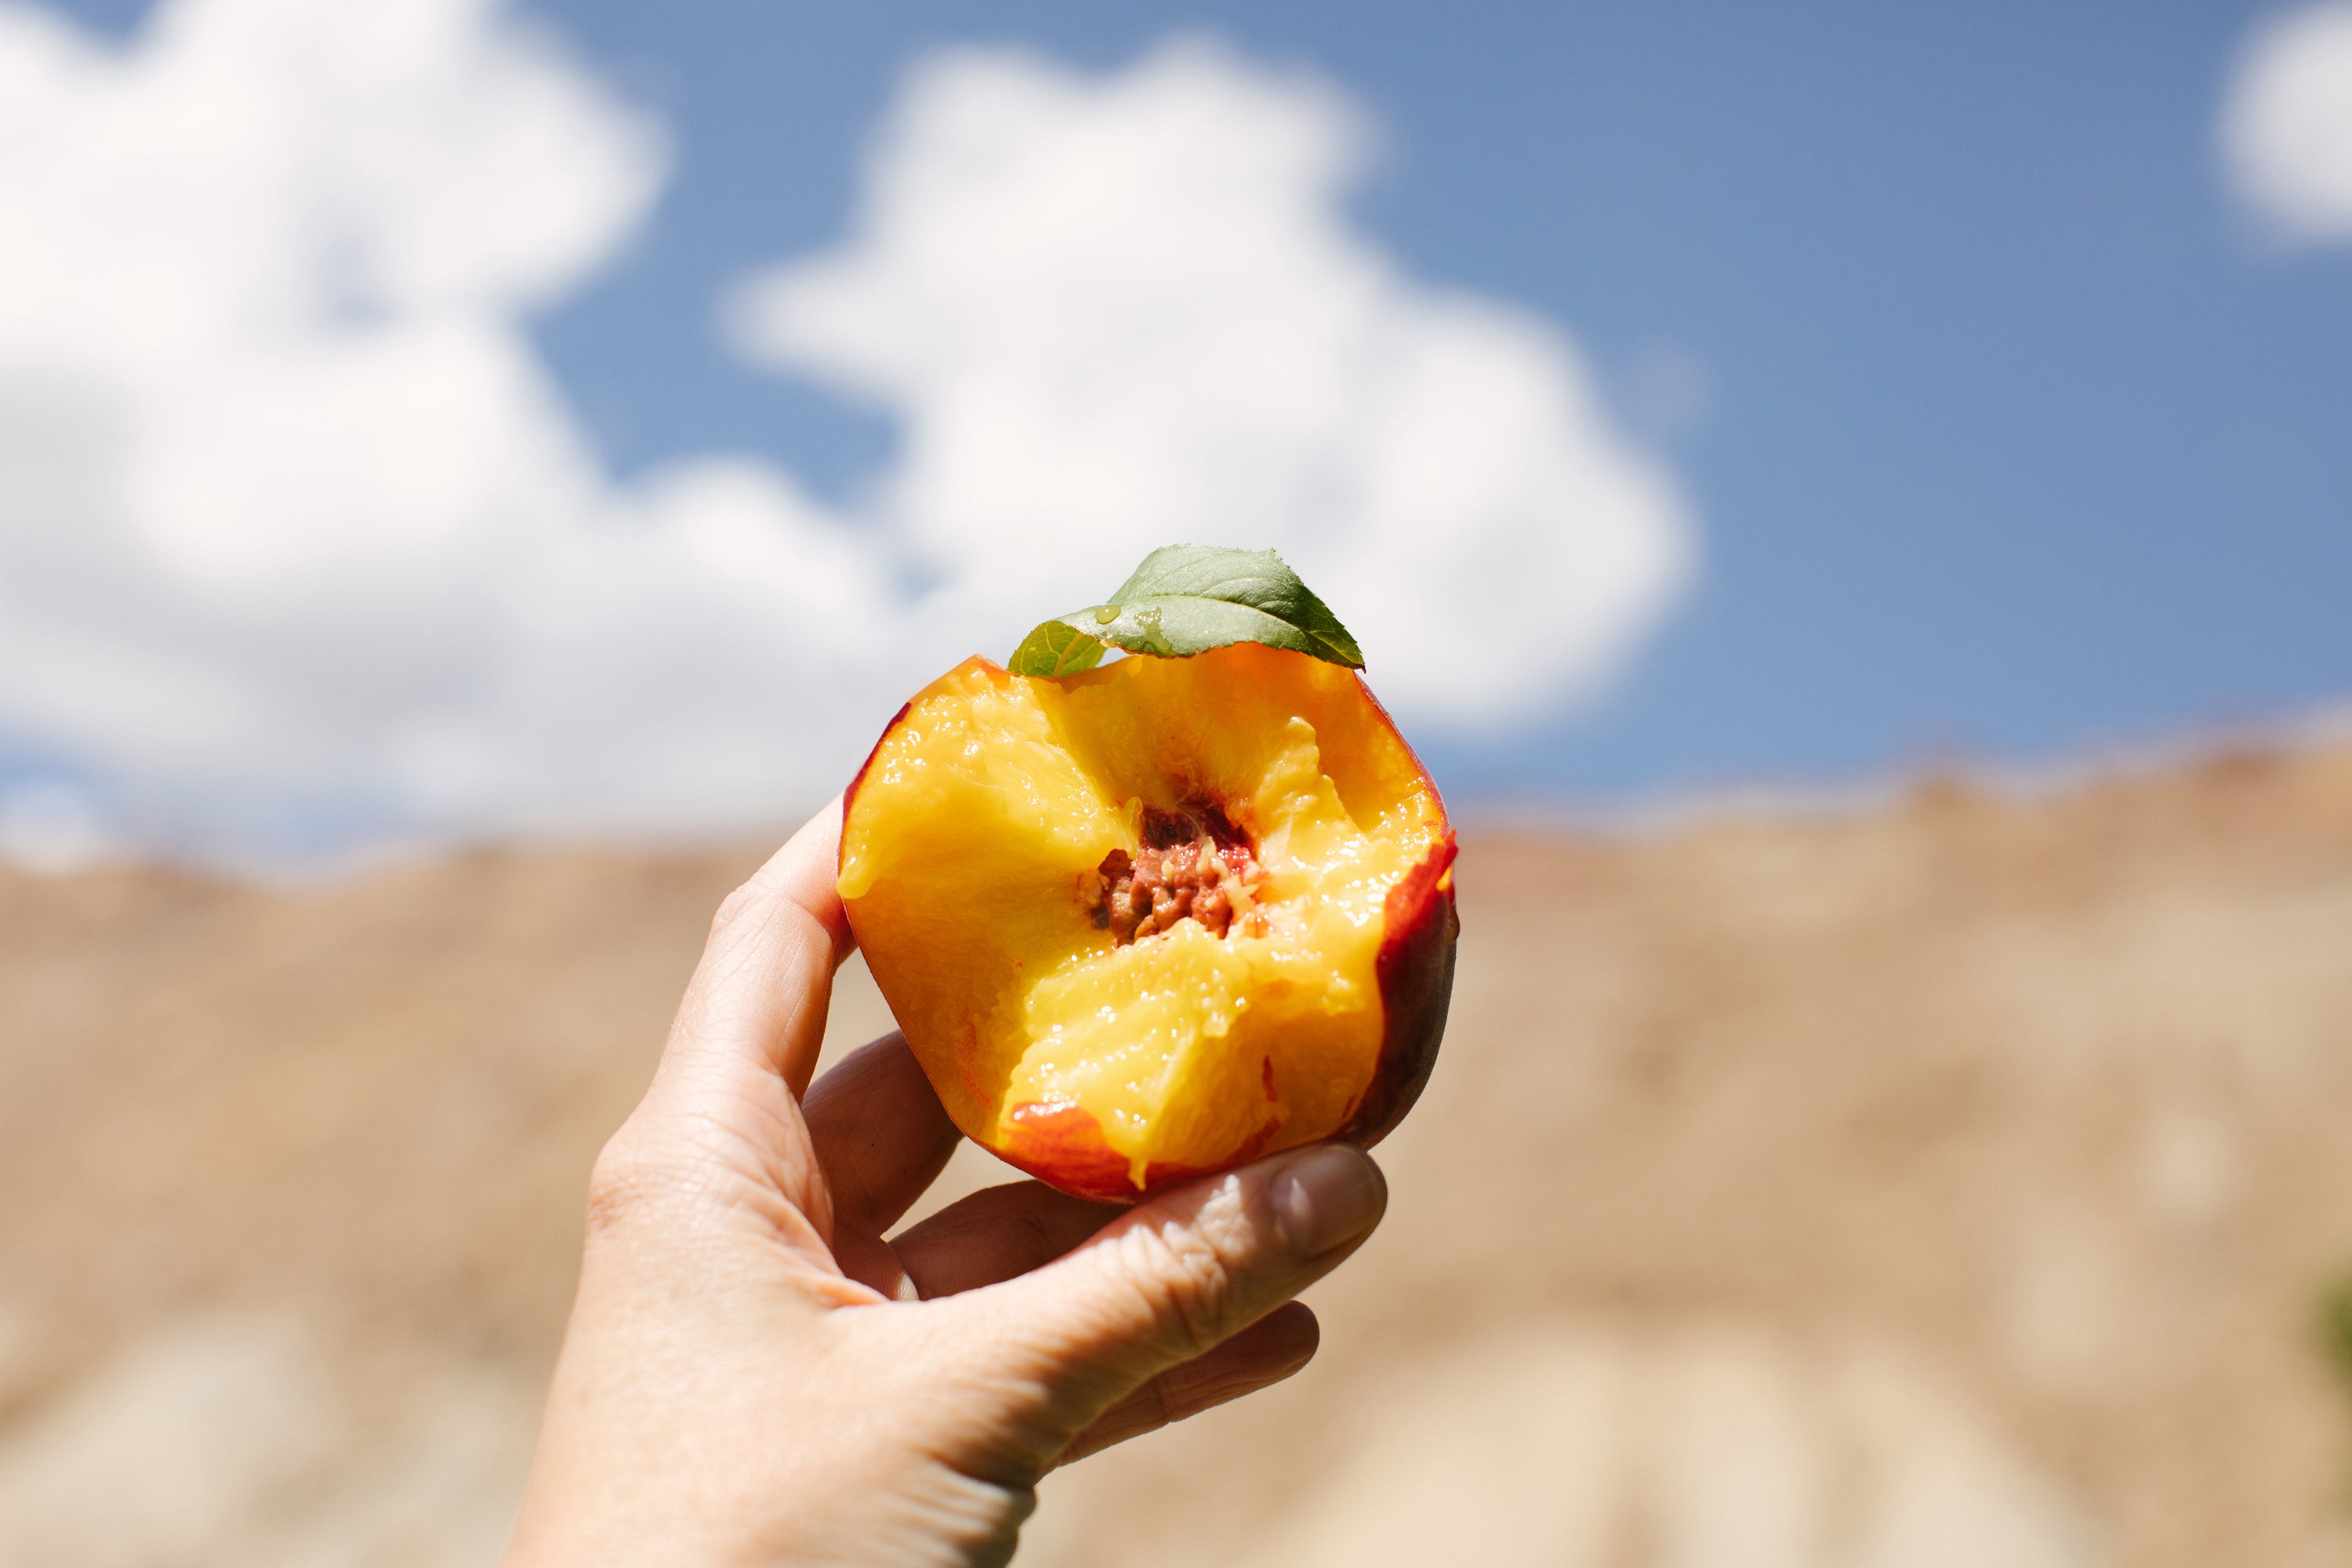 The Peach Crucible of Colorado